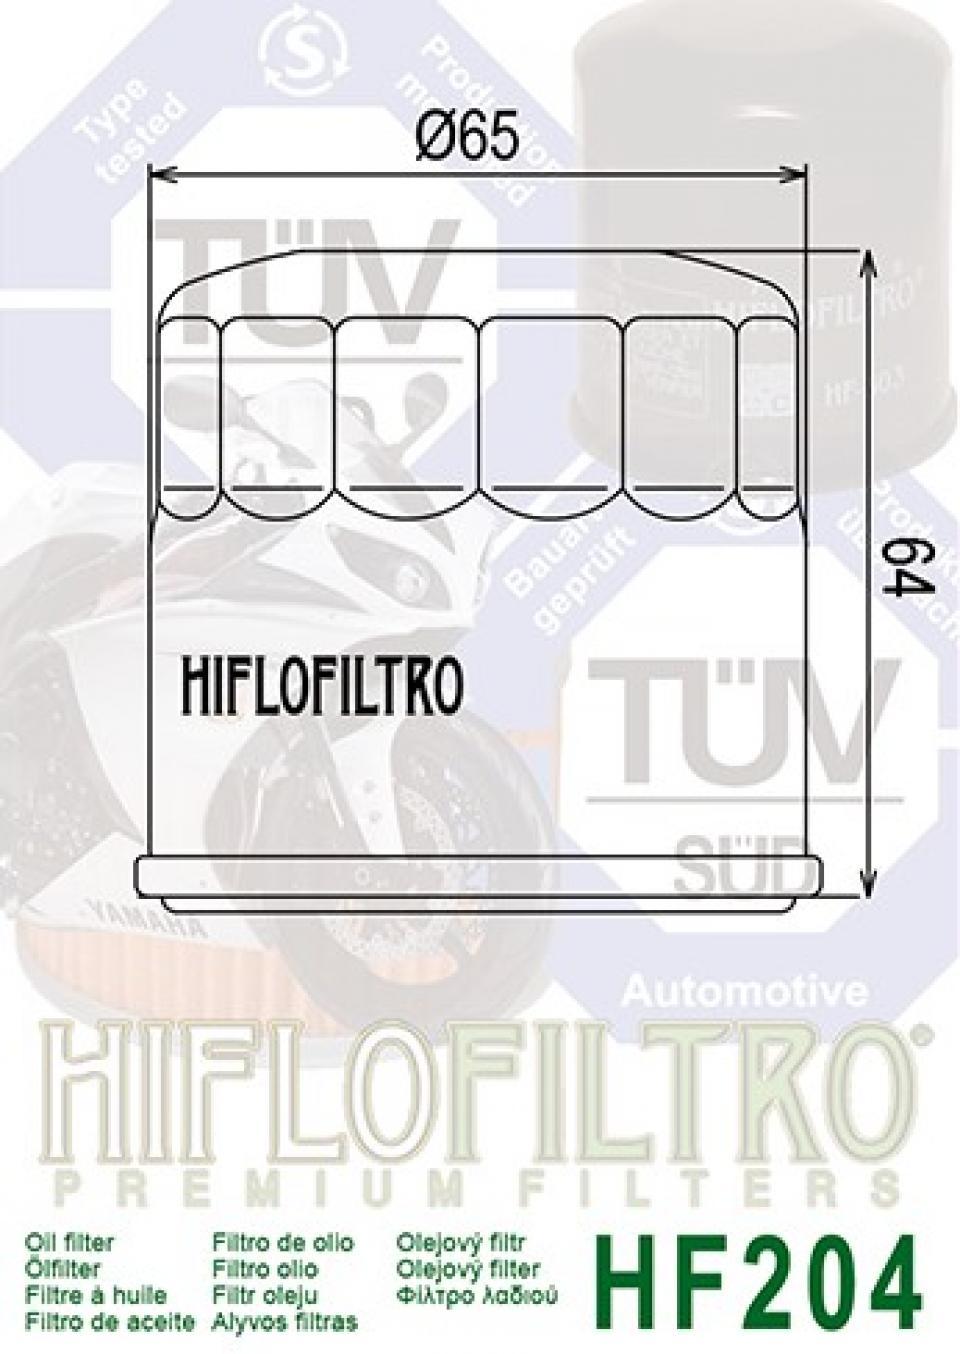 Filtre à huile Hiflofiltro pour Moto Honda 1000 Varadero 2003 à 2013 Neuf